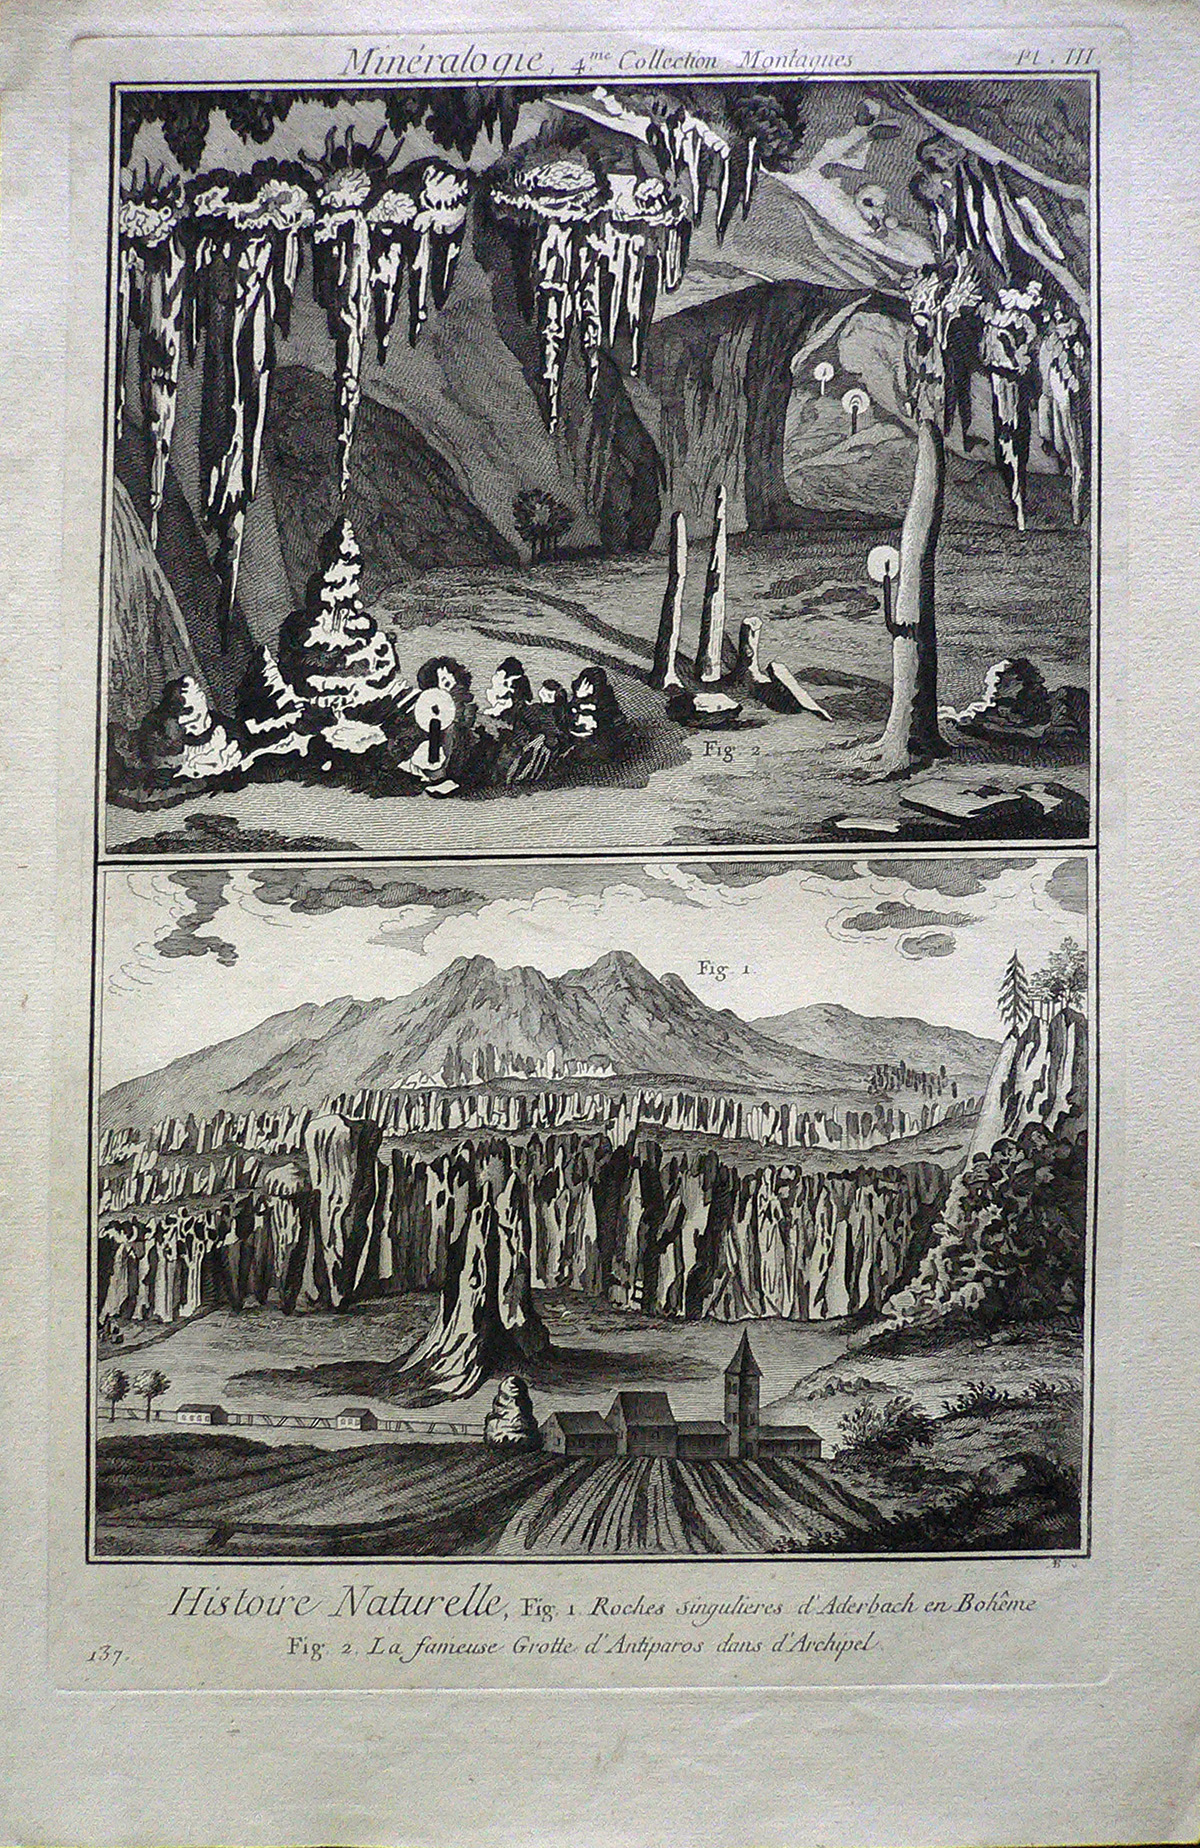 CCLXXIX, 132 | Minéralogie,4.me Collection montagnes. Histoire Naturelle